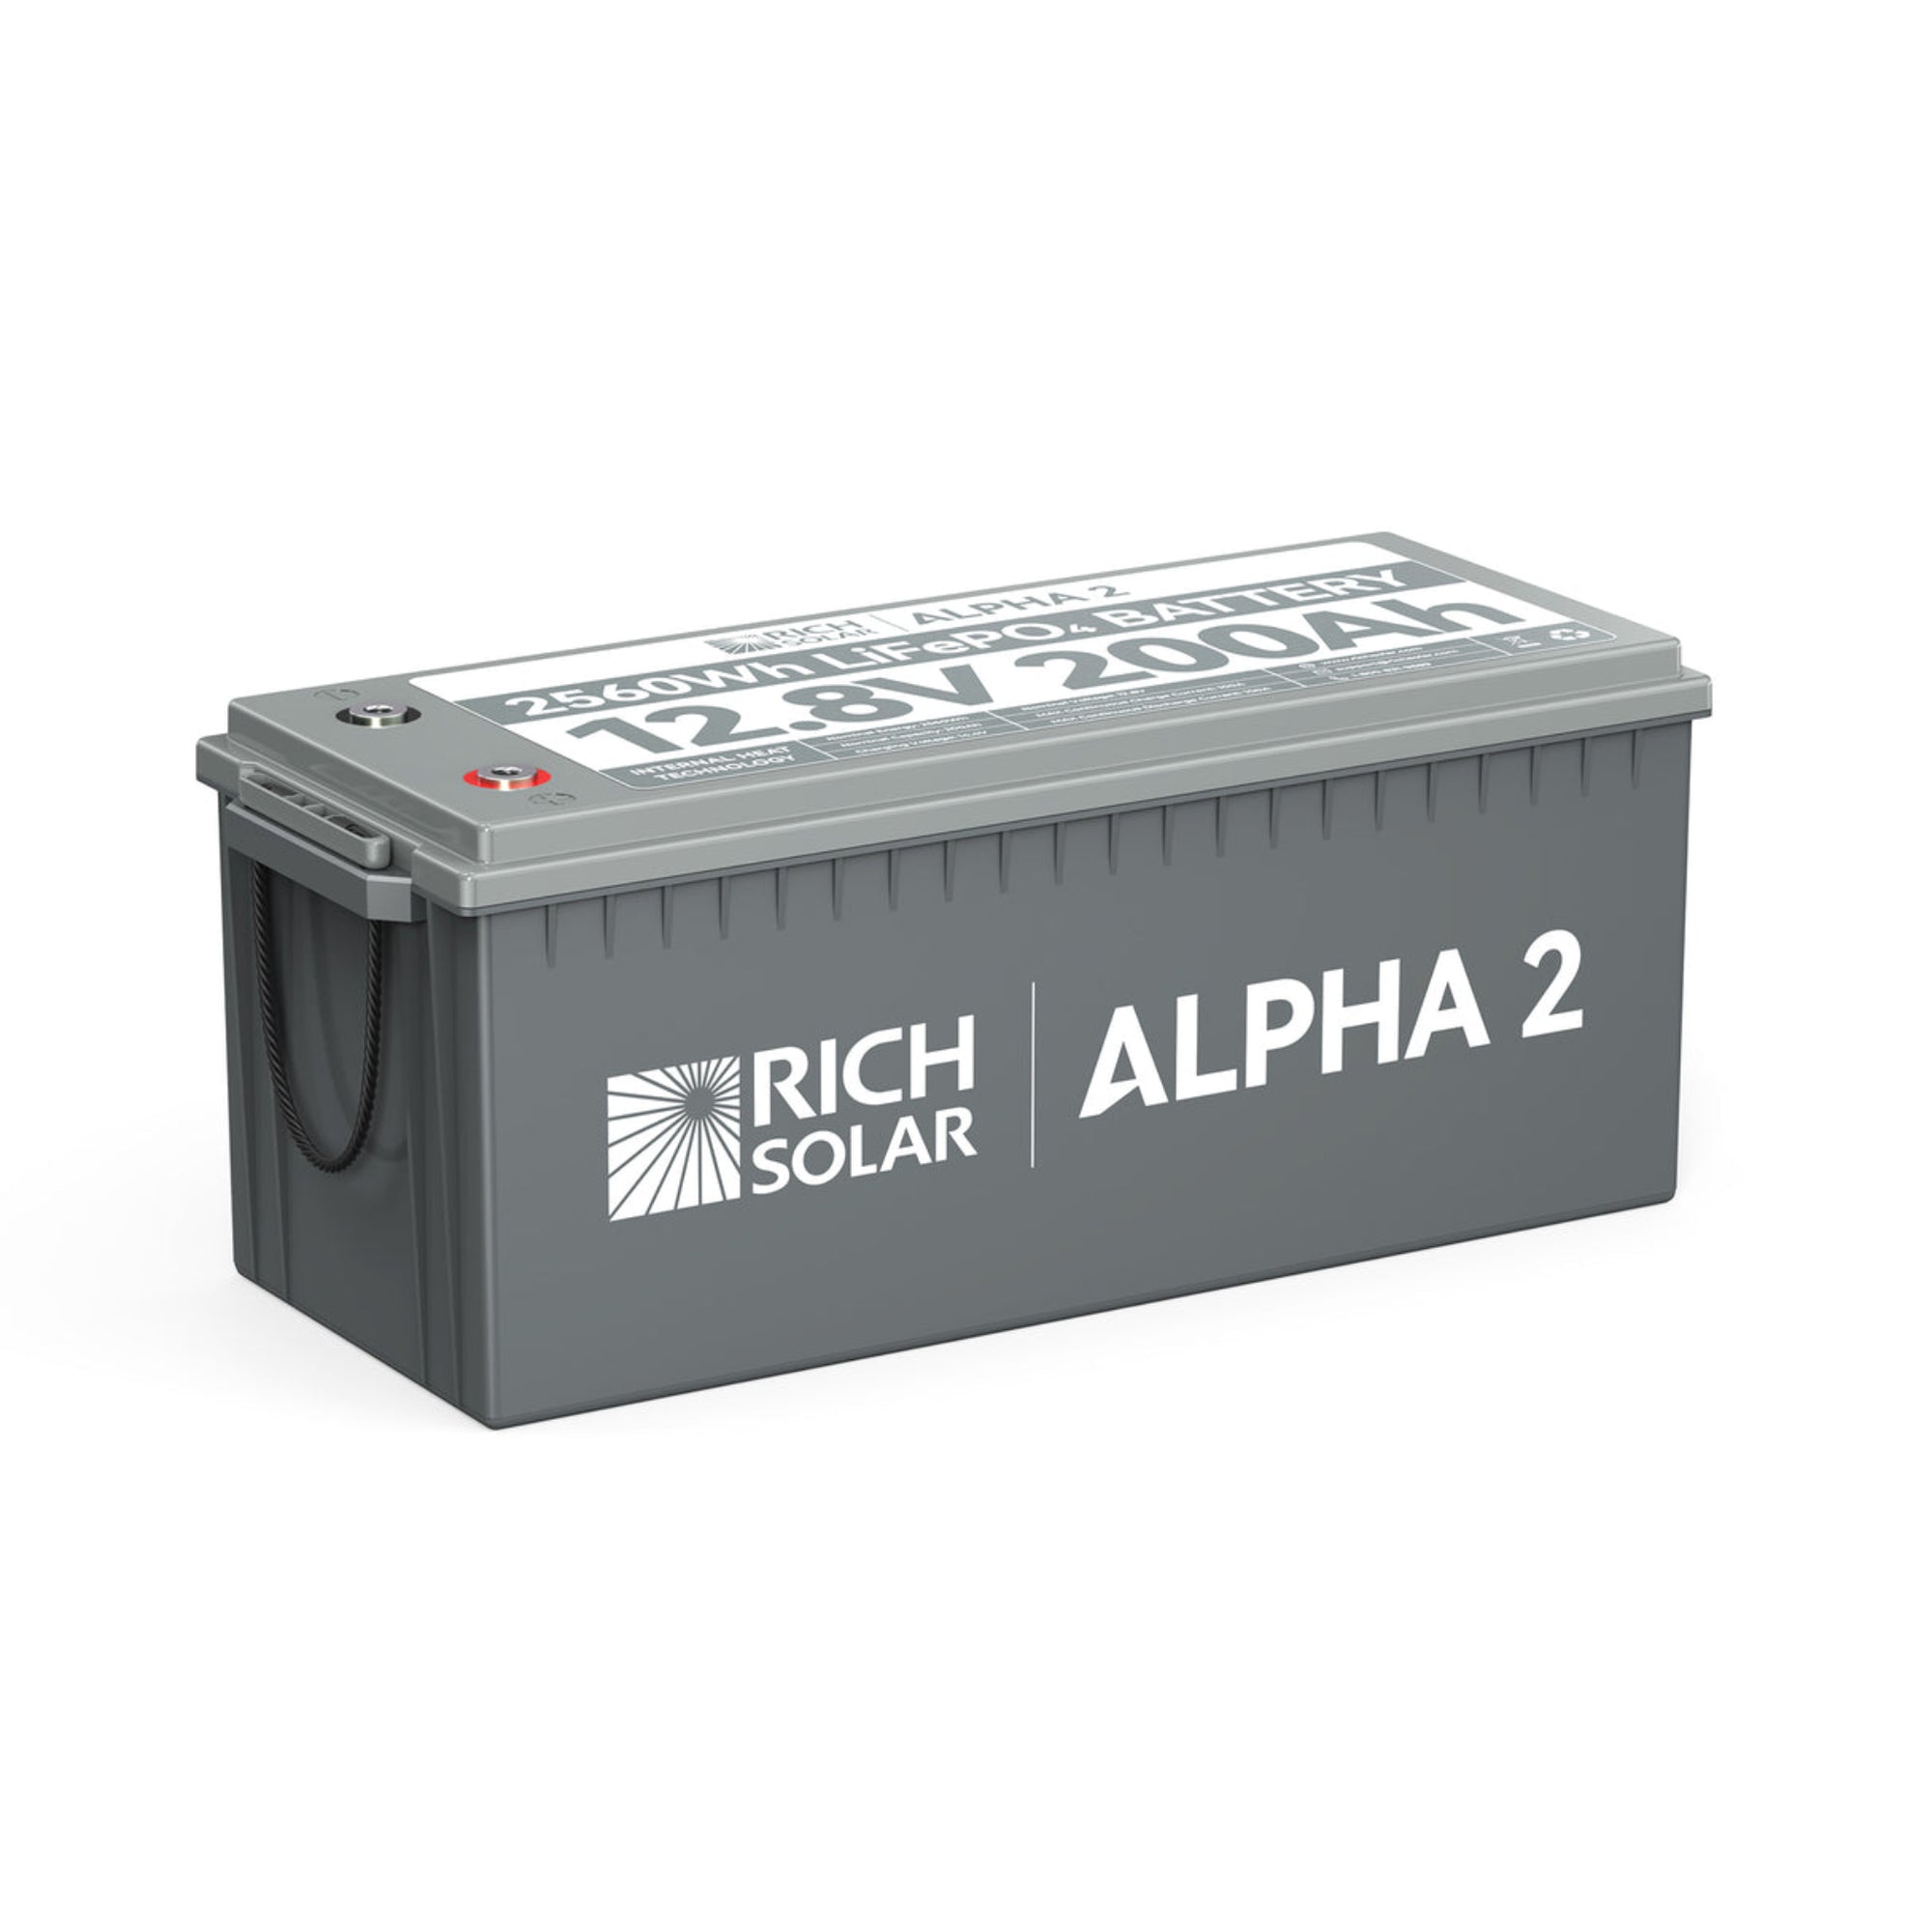 Rich Solar Alpha 2 12V 200Ah Heated Battery